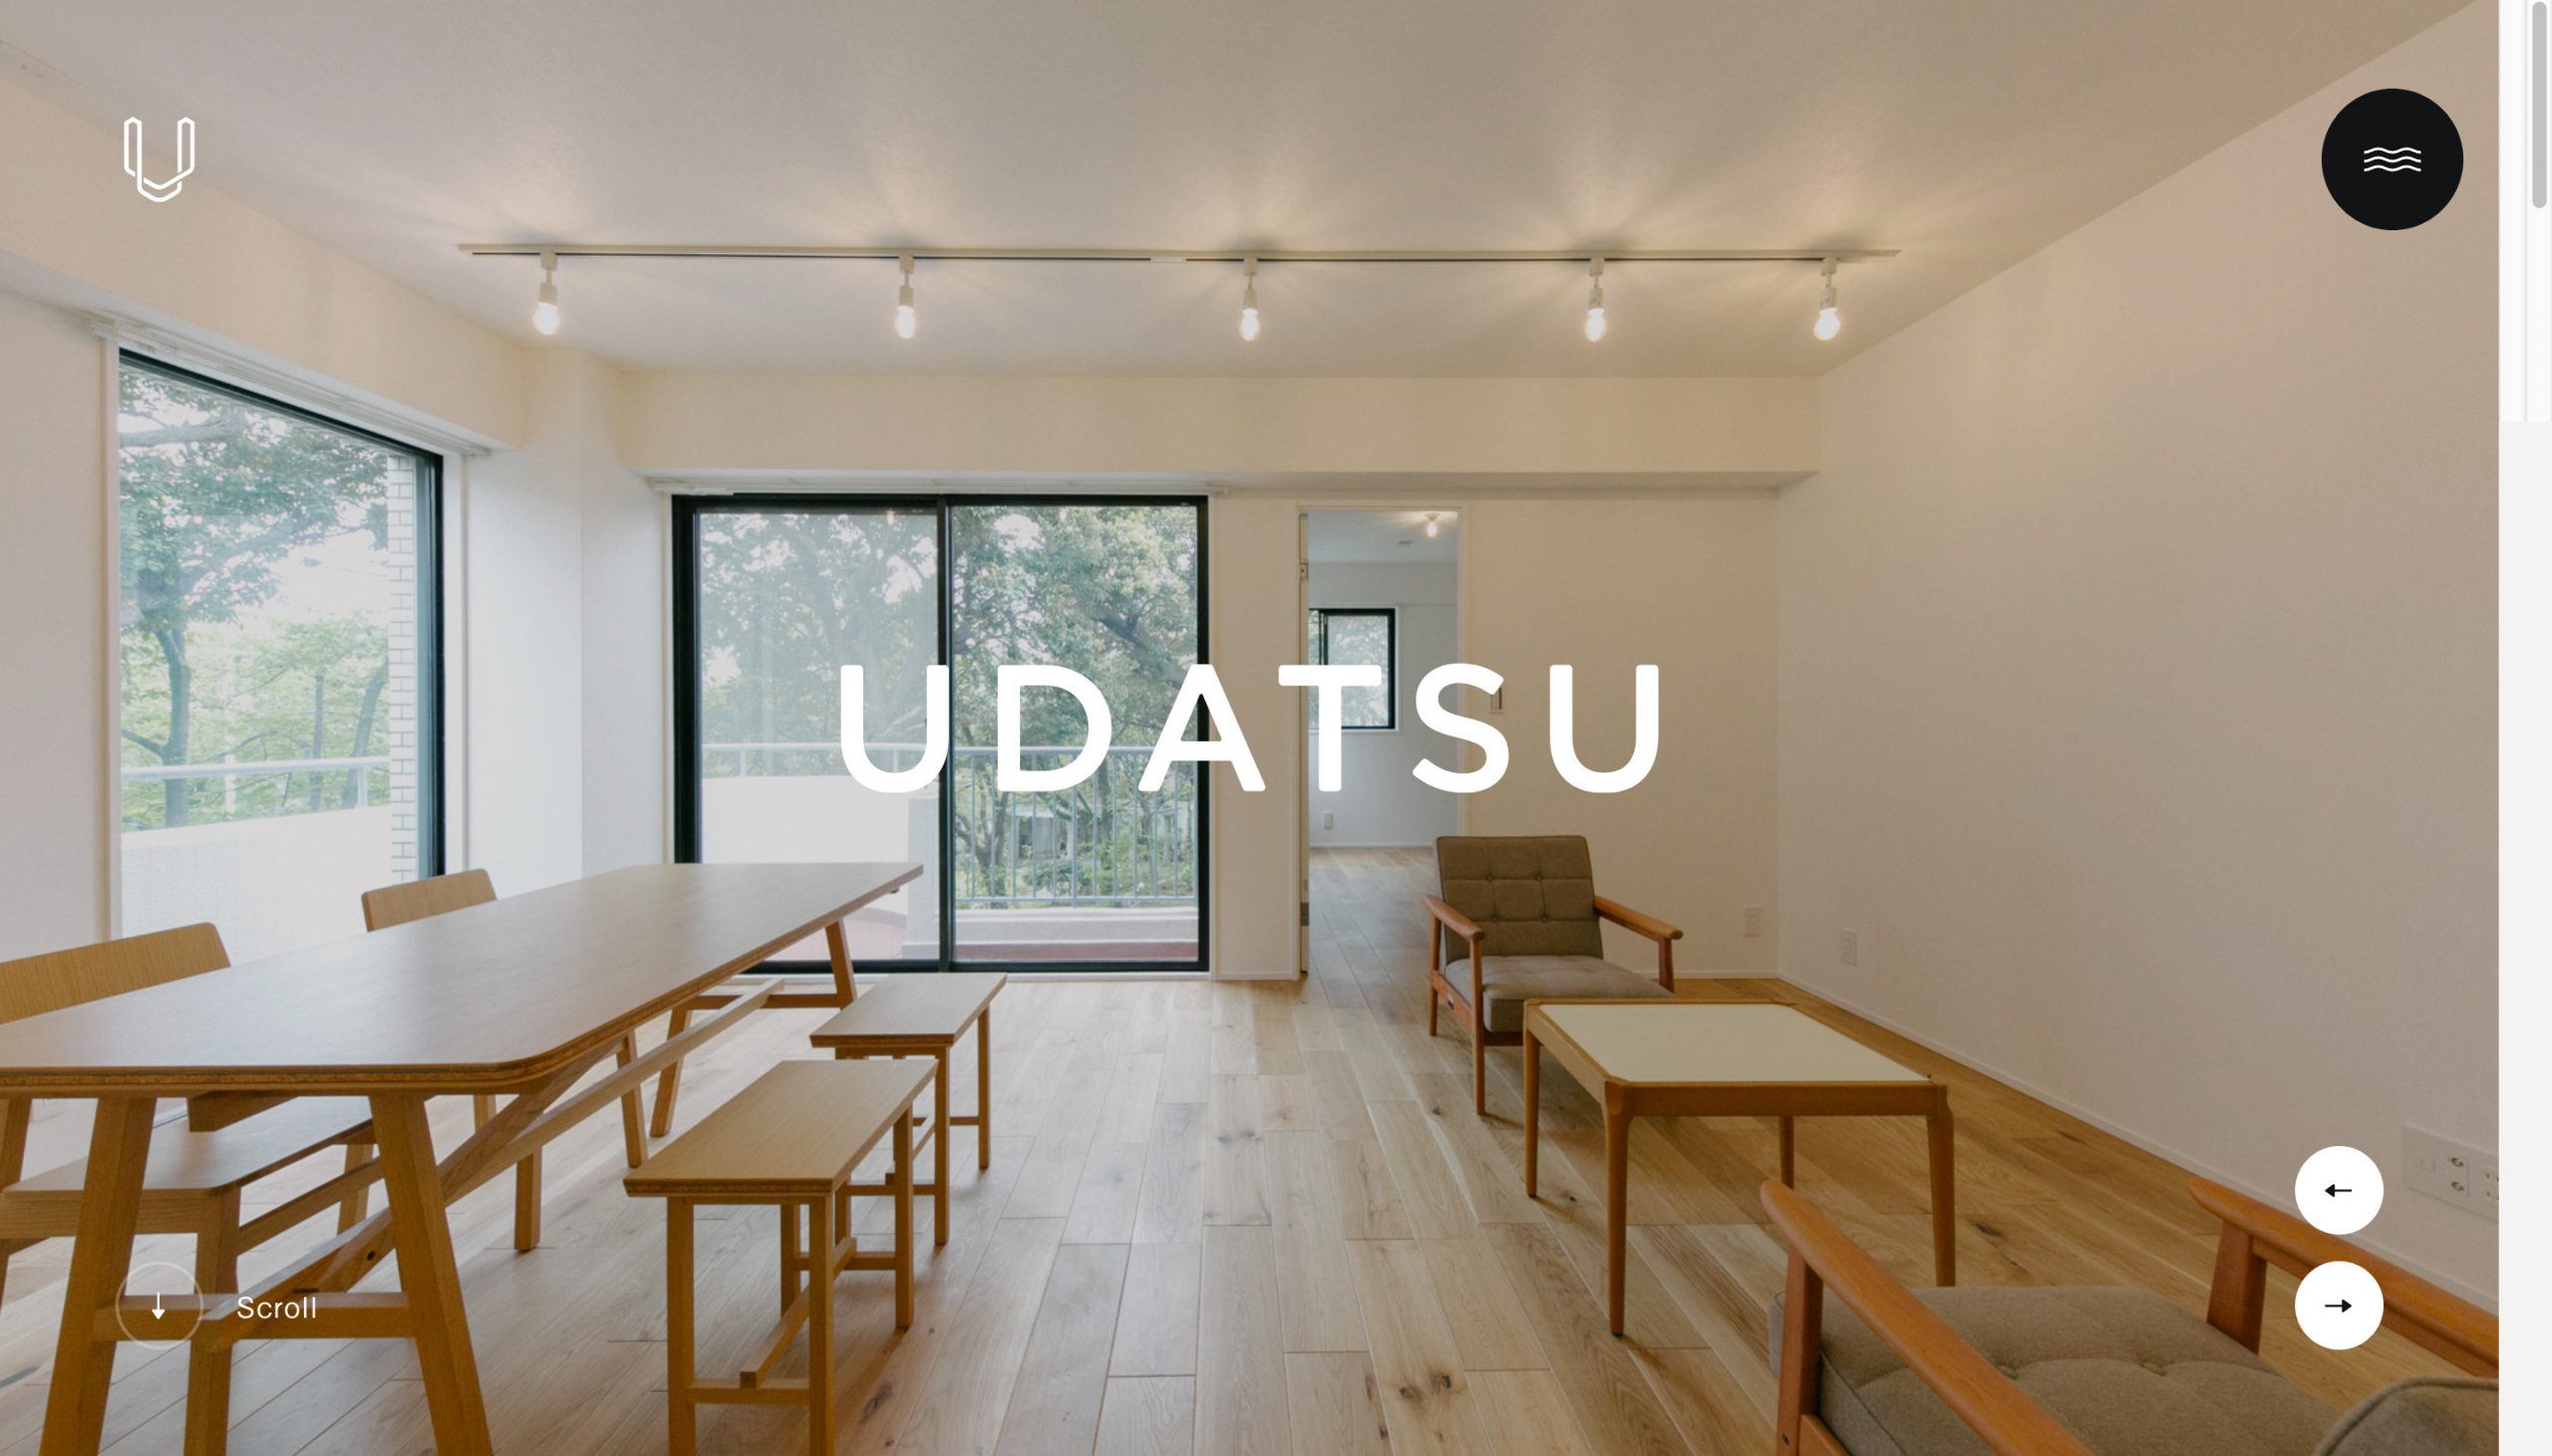 建築･不動産・建設・開発 コーポレートサイト制作 WEBデザイン参考ギャラリー UDATSU